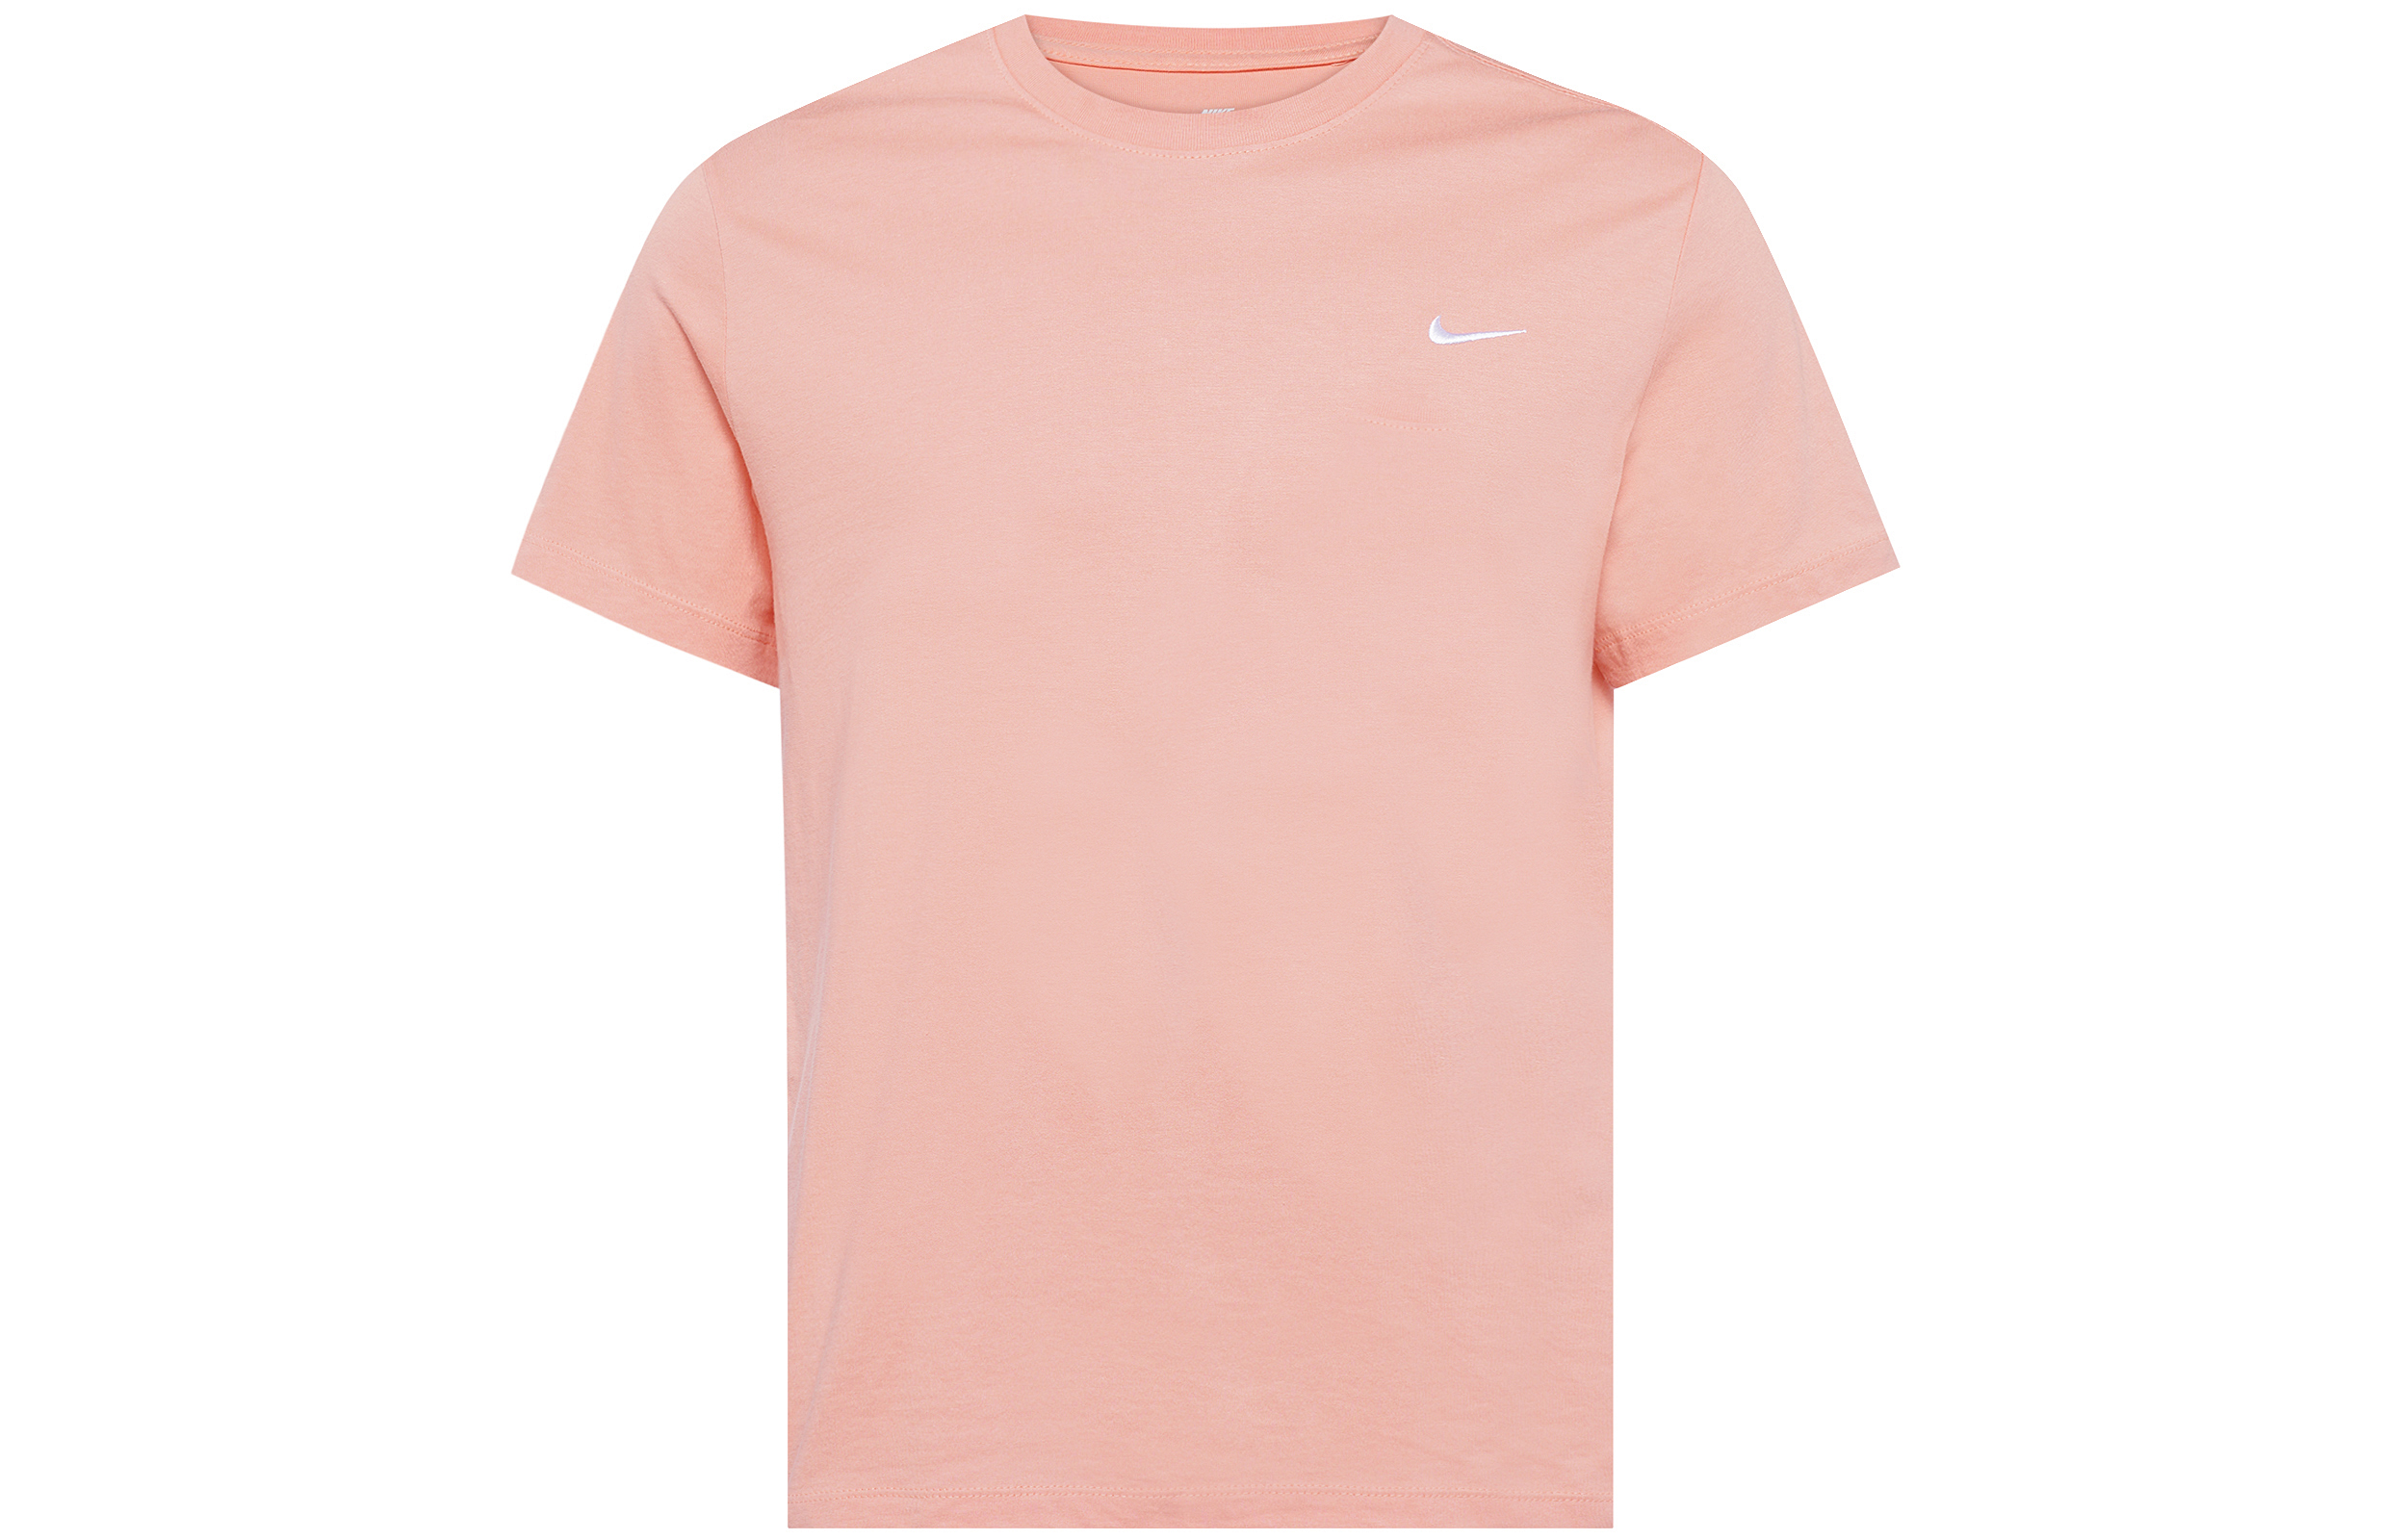 Мужская футболка Nike, розовый мужская футболка розовый делориан m красный